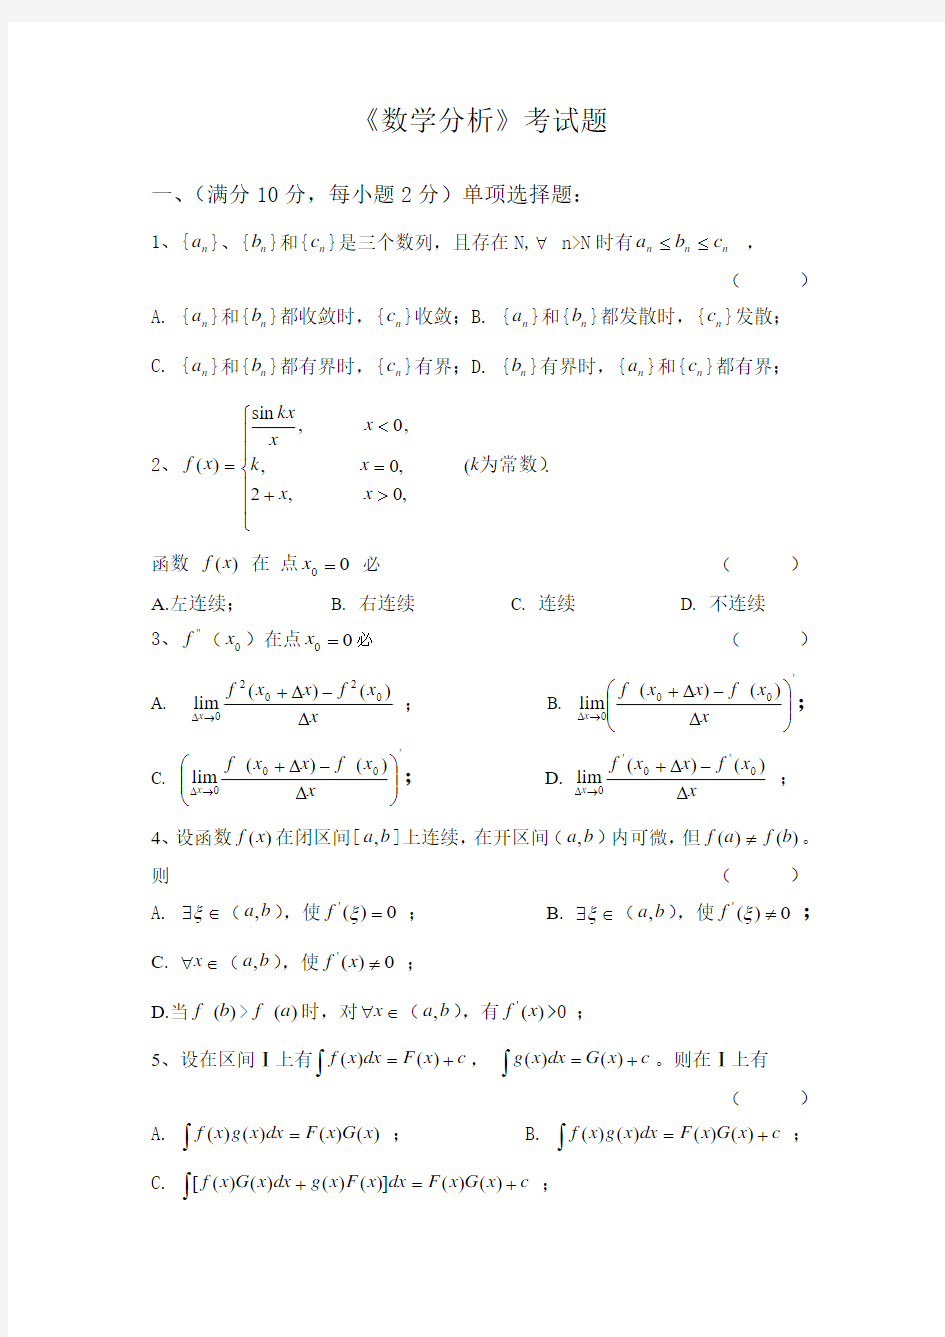 上海财经大学 数学分析 测试题 (大一)